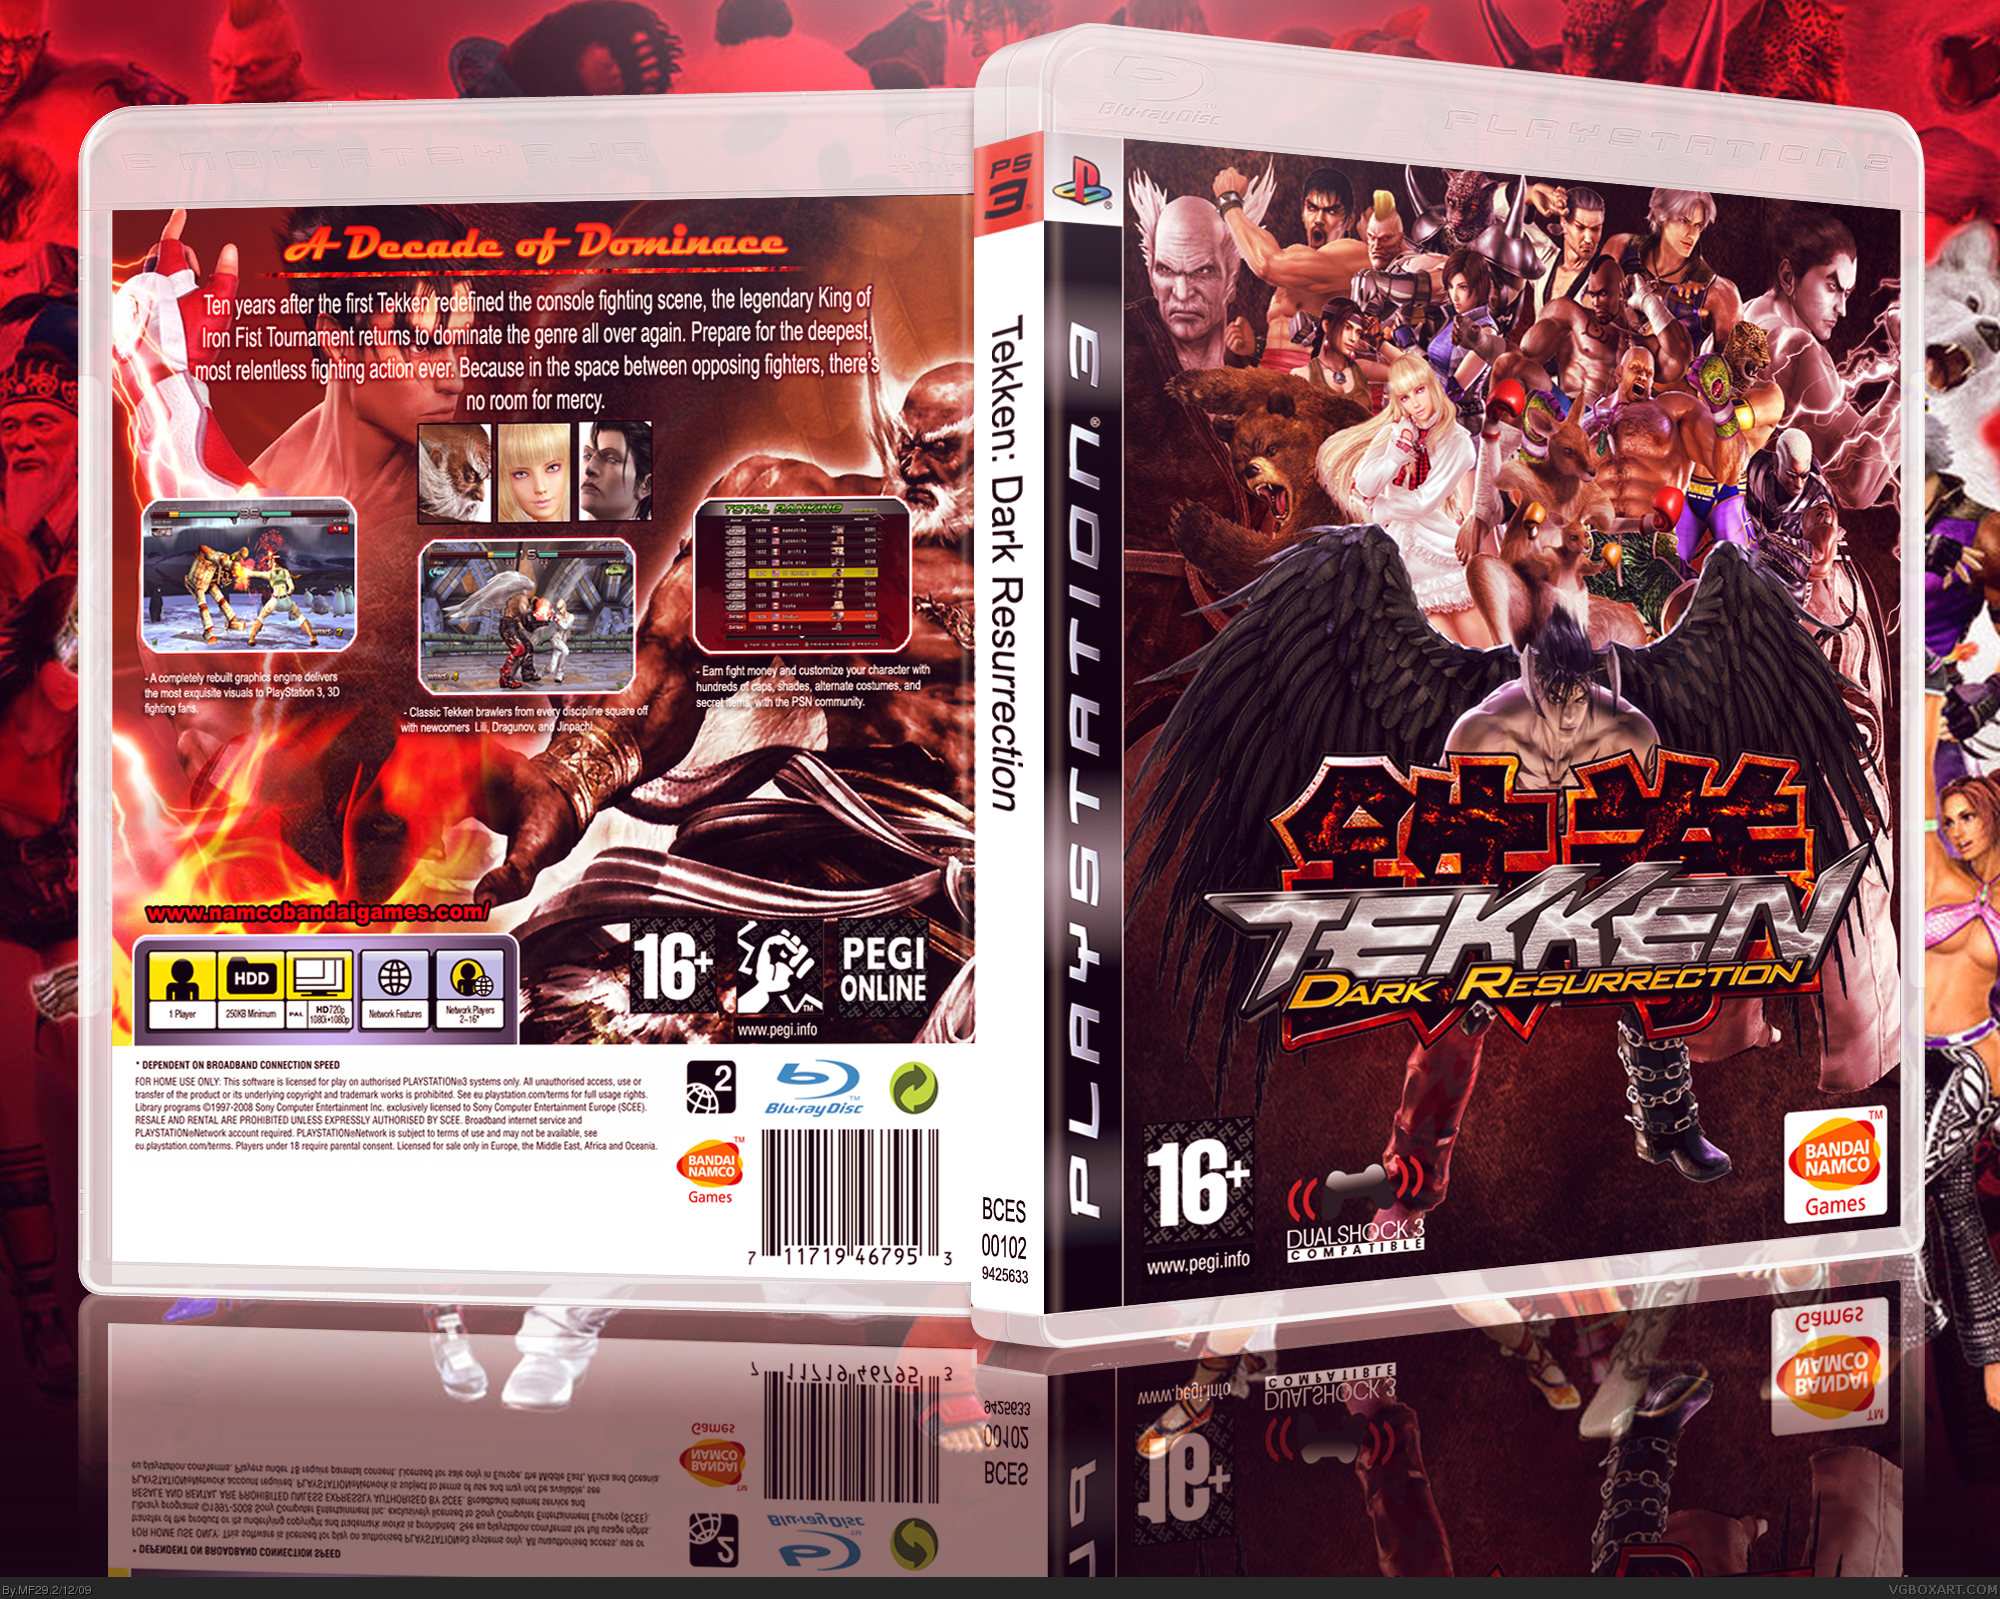 Tekken 5: Dark Resurrection Videos for PlayStation 3 - GameFAQs